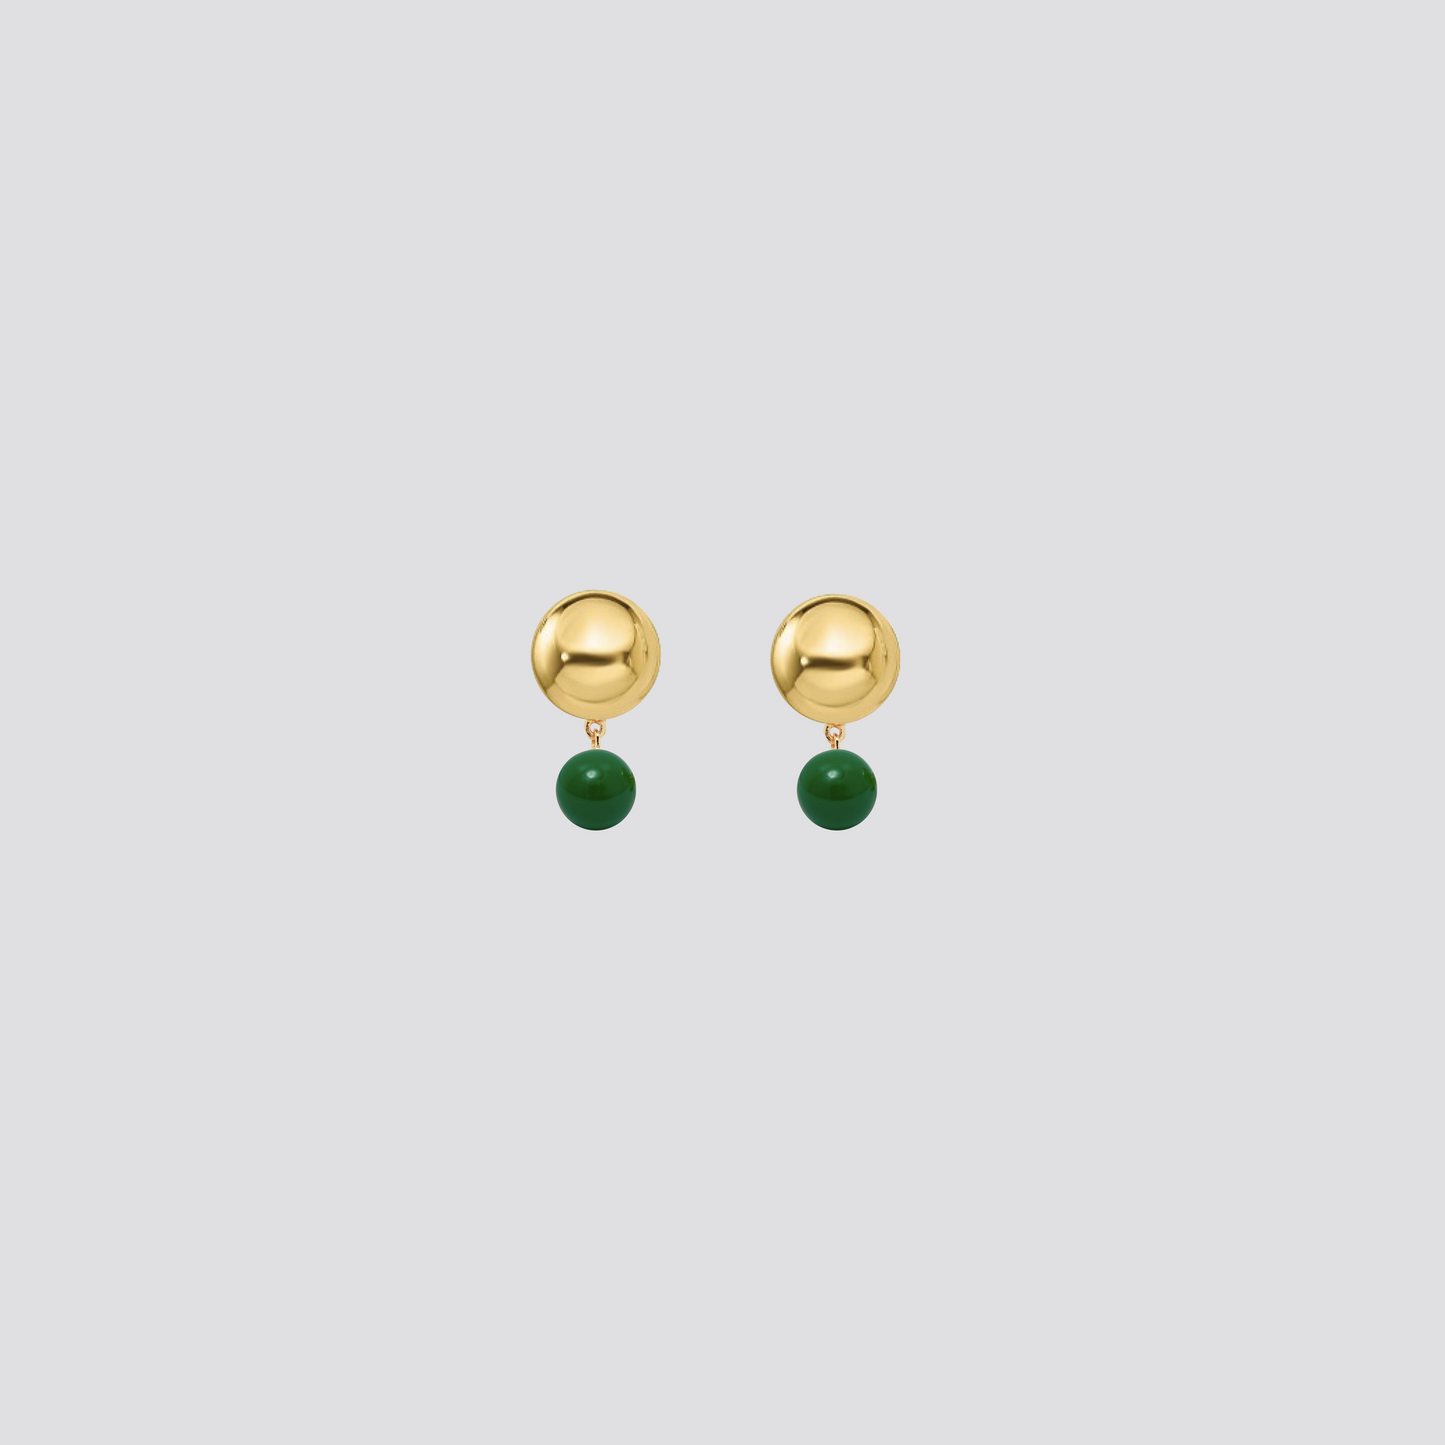 Double sphere earrings with green enamel